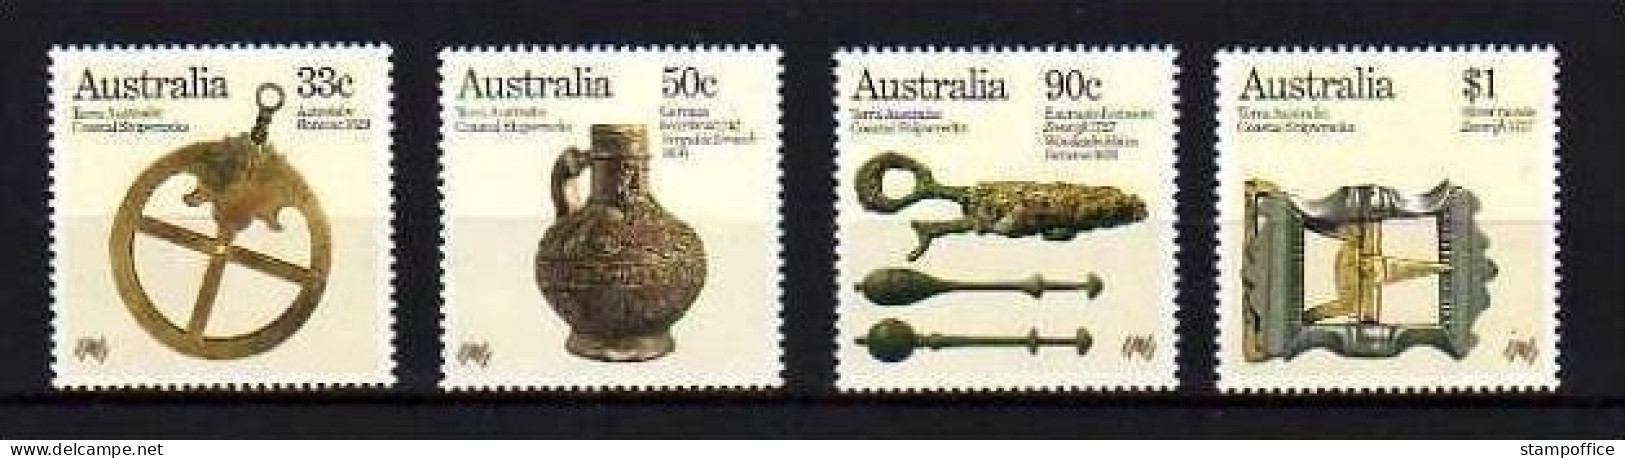 AUSTRALIEN MI-NR. 951-954 POSTFRISCH(MINT) KOLONIALISIERUNG - FUNDE AUS SCHIFFSWRACKS - Mint Stamps